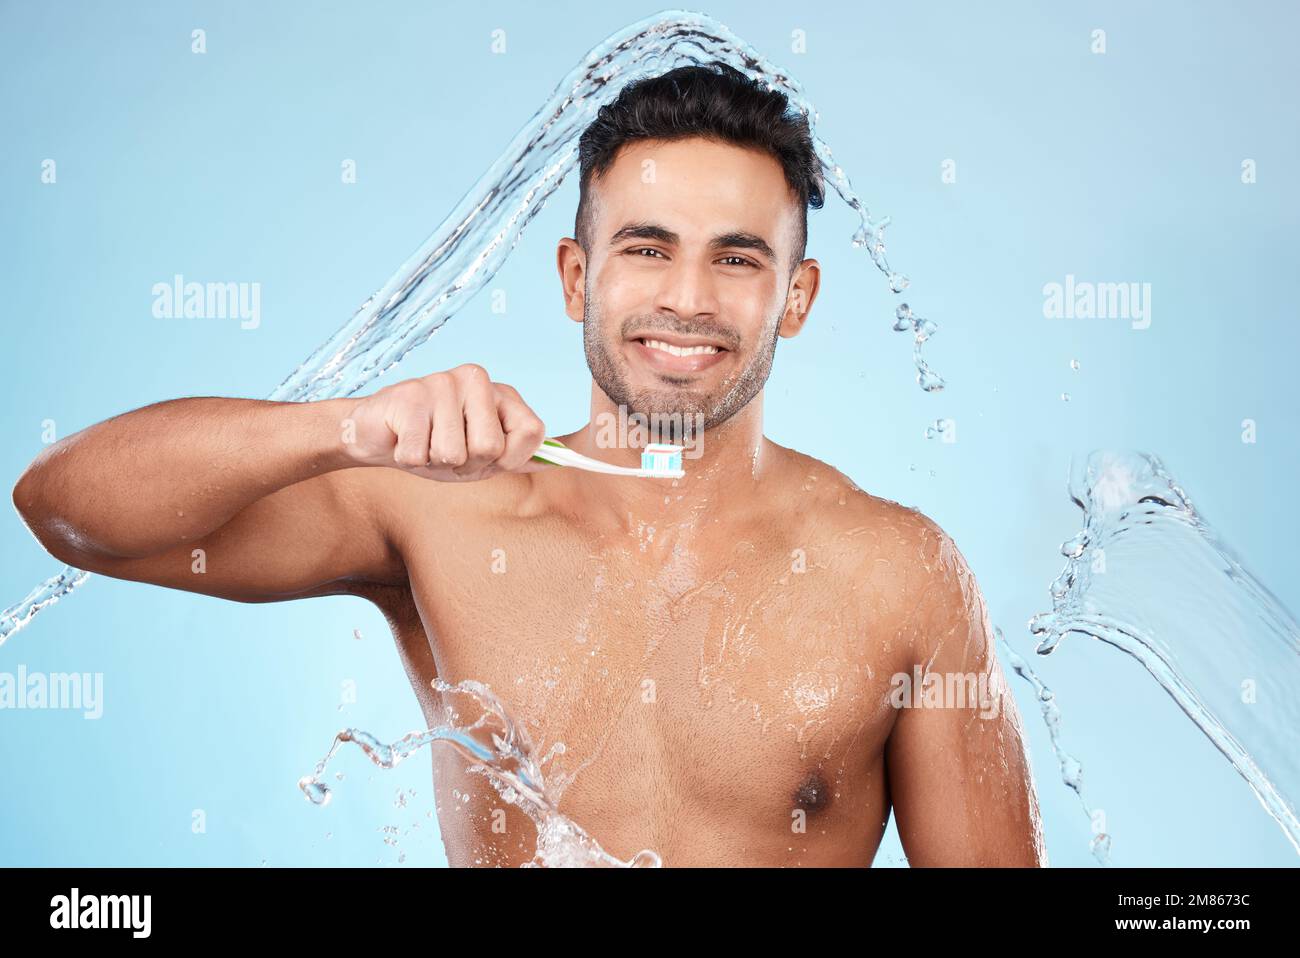 Face acqua immagini e fotografie stock ad alta risoluzione - Alamy